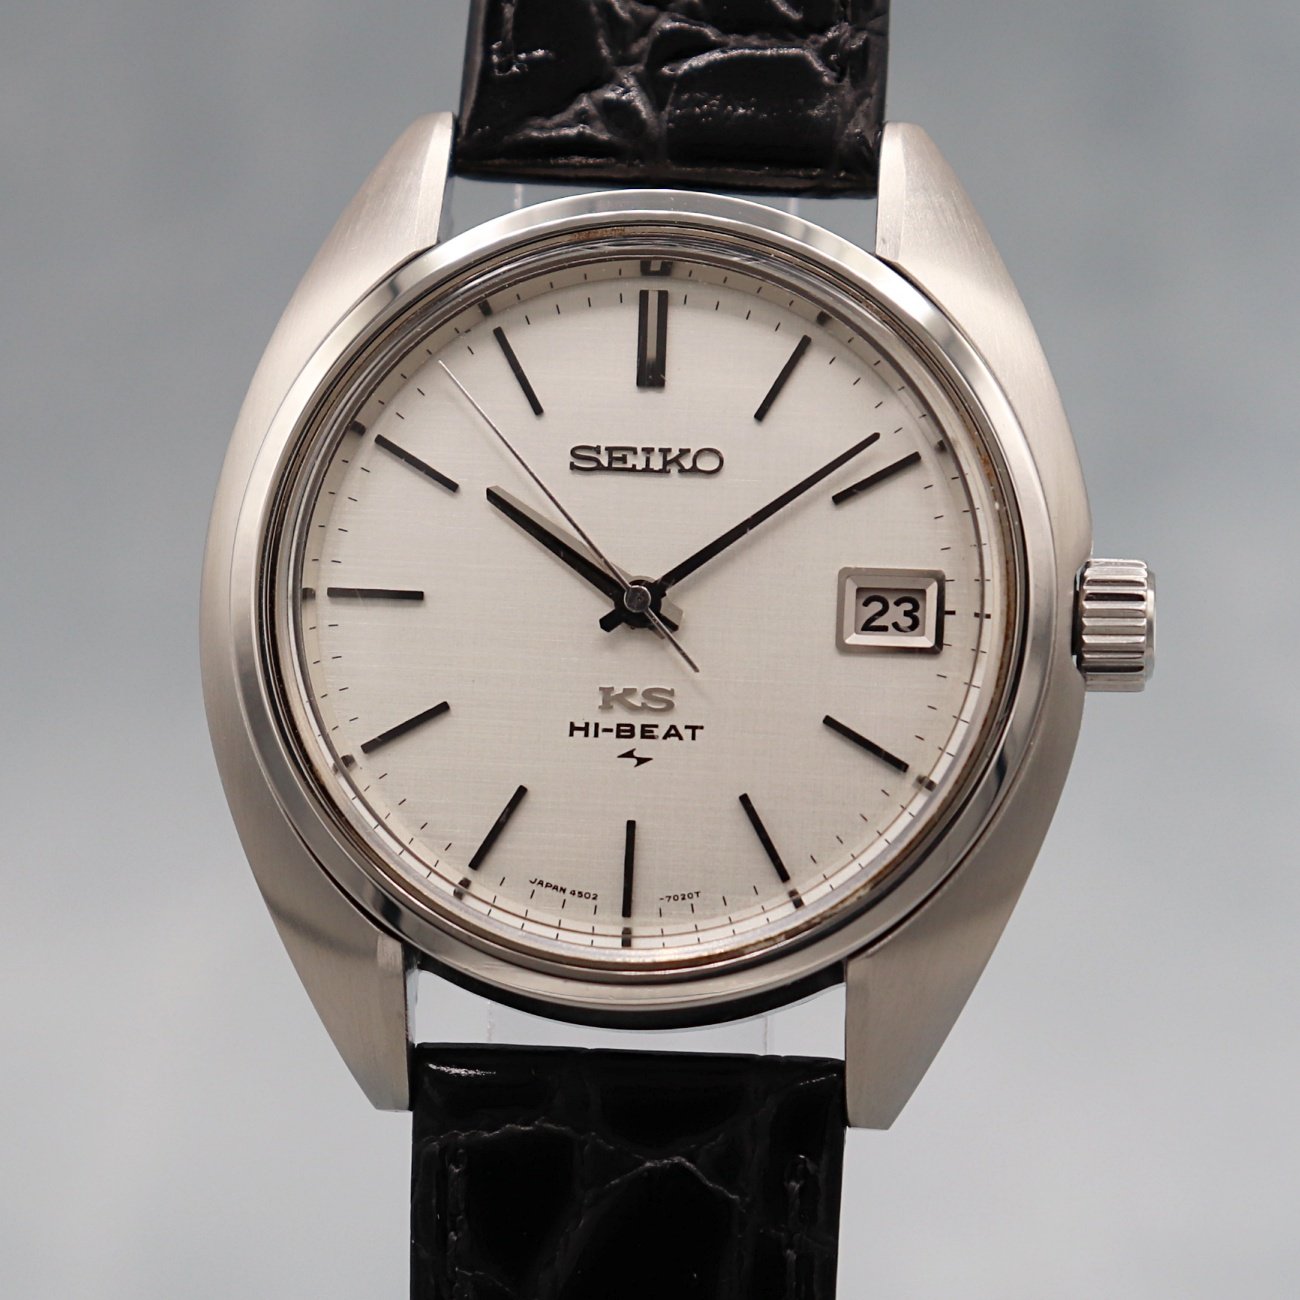 SEIKO KS ハイビート 4502-7001 キングセイコー ハック機能付 - 腕時計 